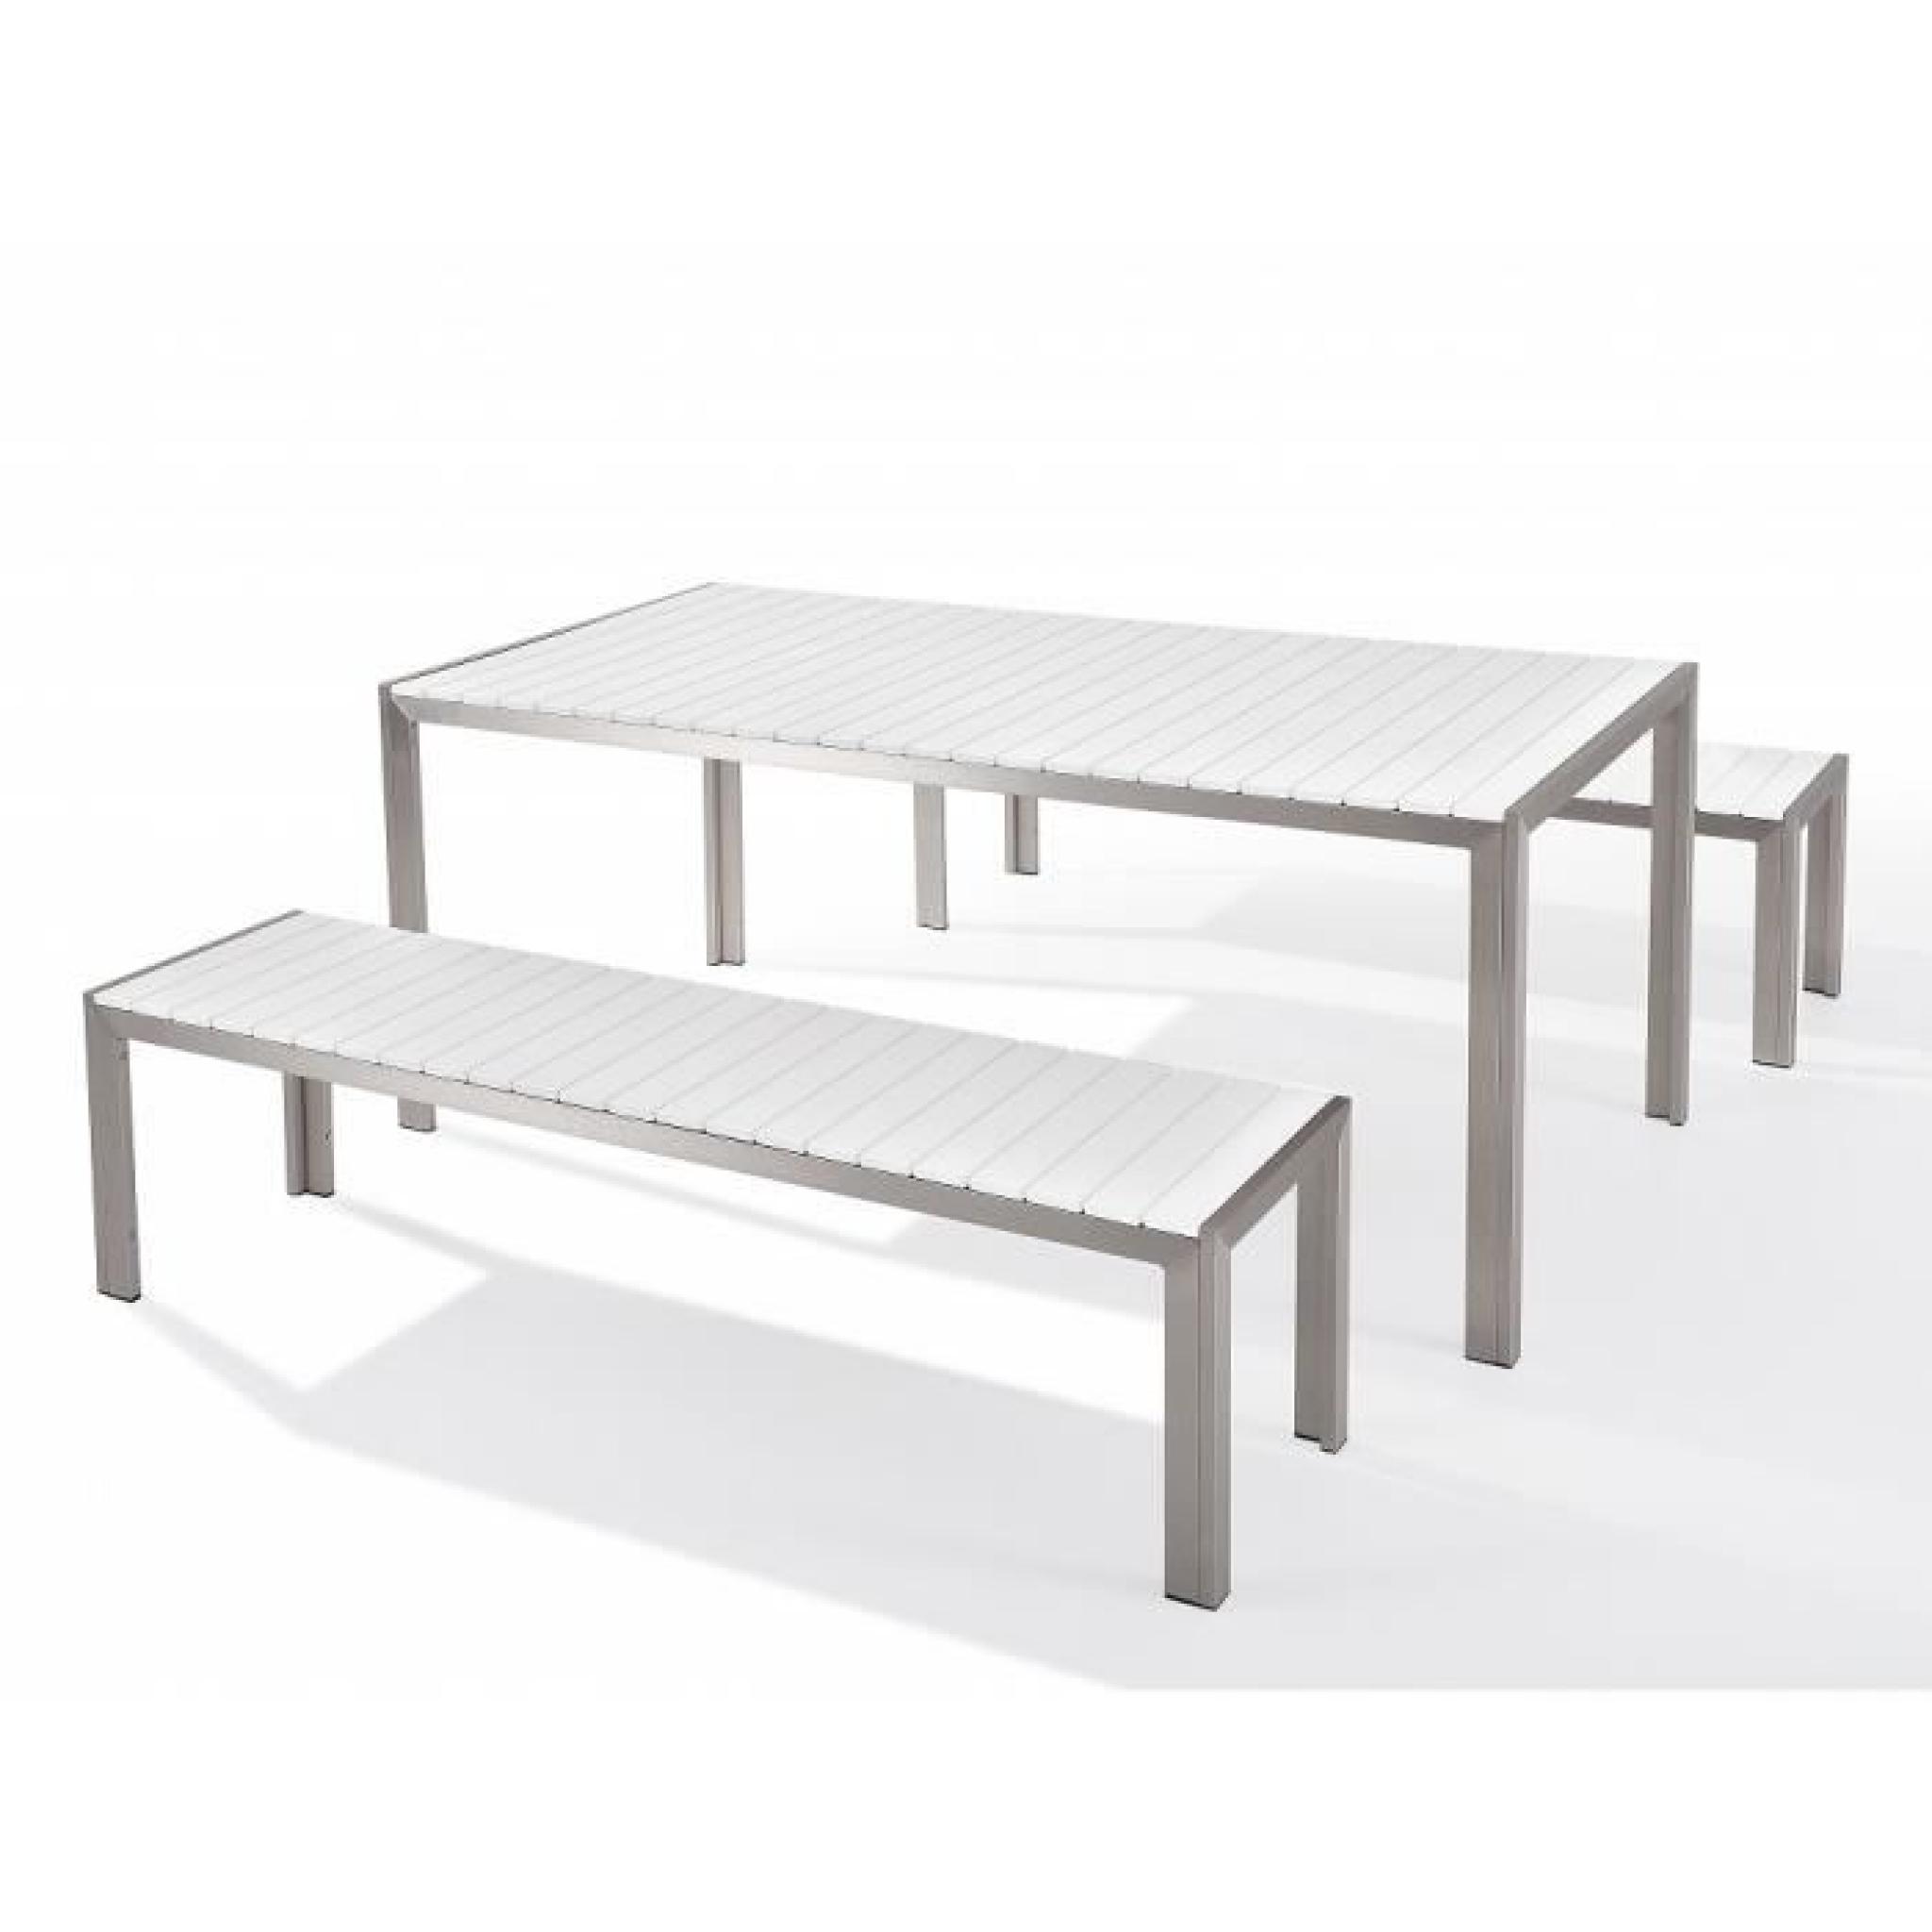 Table de jardin aluminium blanc- plateau en polywood 180 cm et 2 bancs - Nardo pas cher